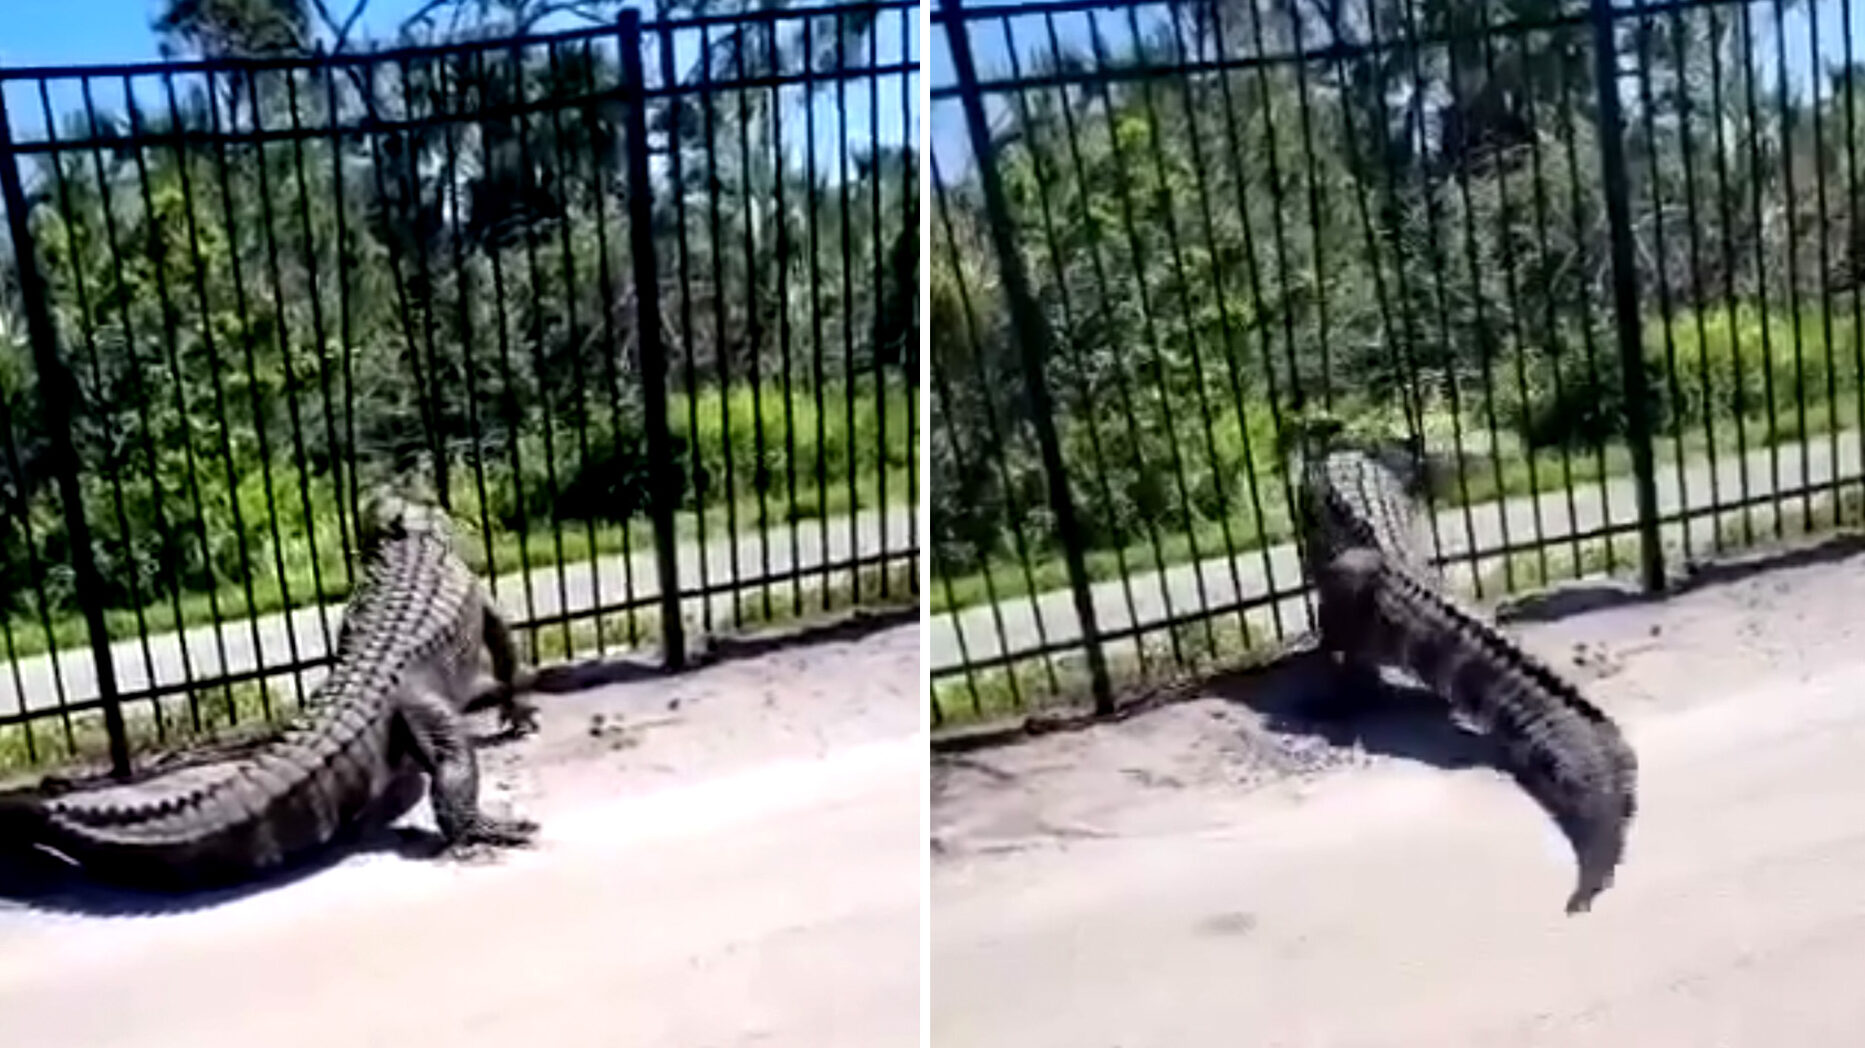 Watch an Alligator Break Through a Metal Fence Like It's Rubber